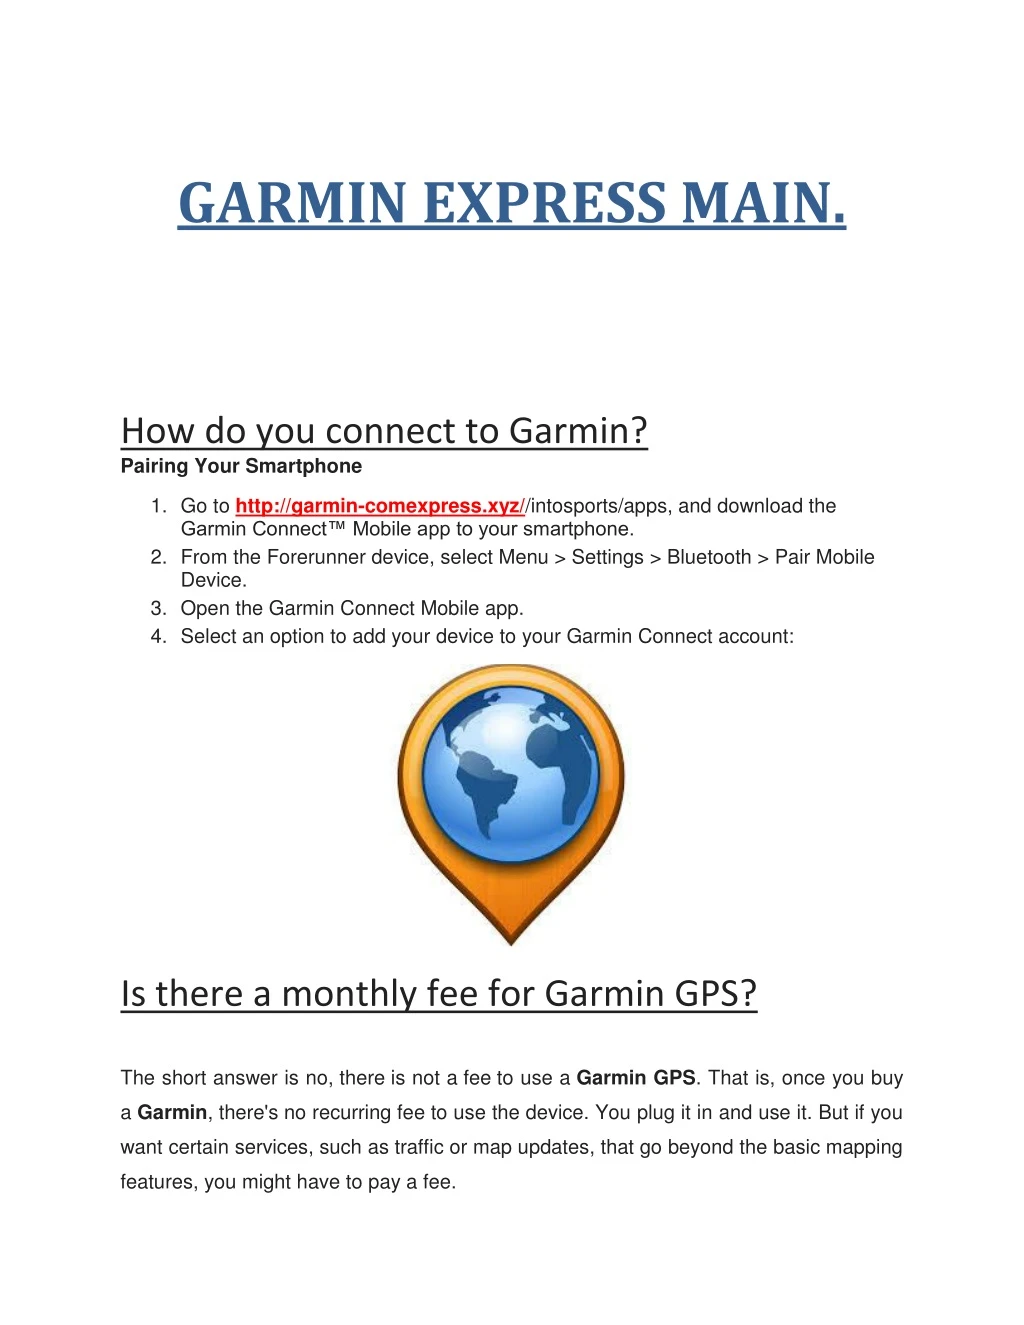 garmin express main